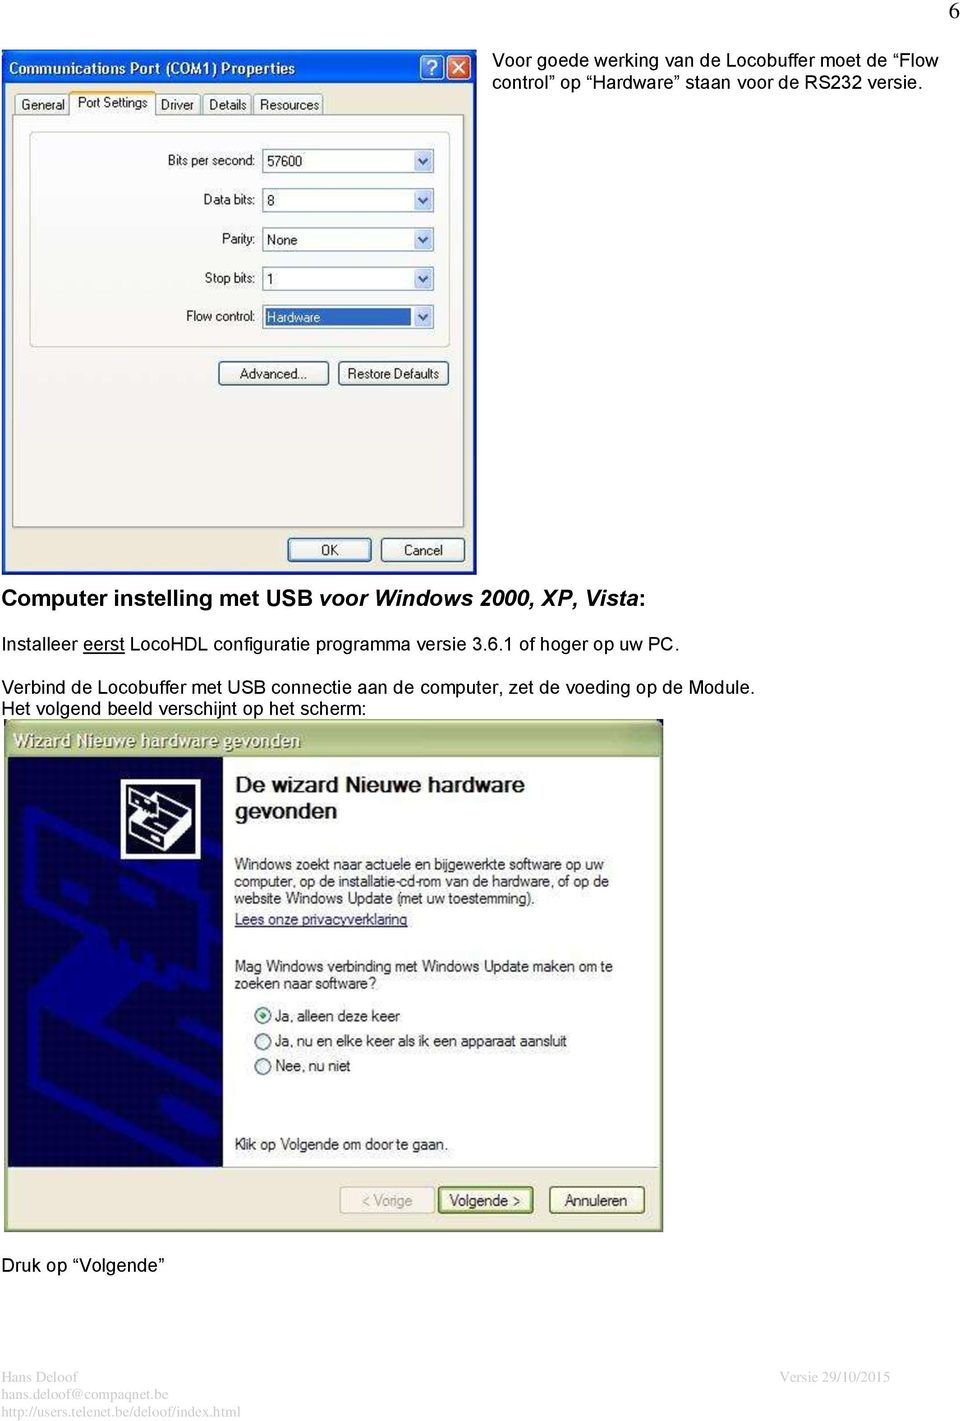 Computer instelling met USB voor Windows 2000, XP, Vista: Installeer eerst LocoHDL configuratie